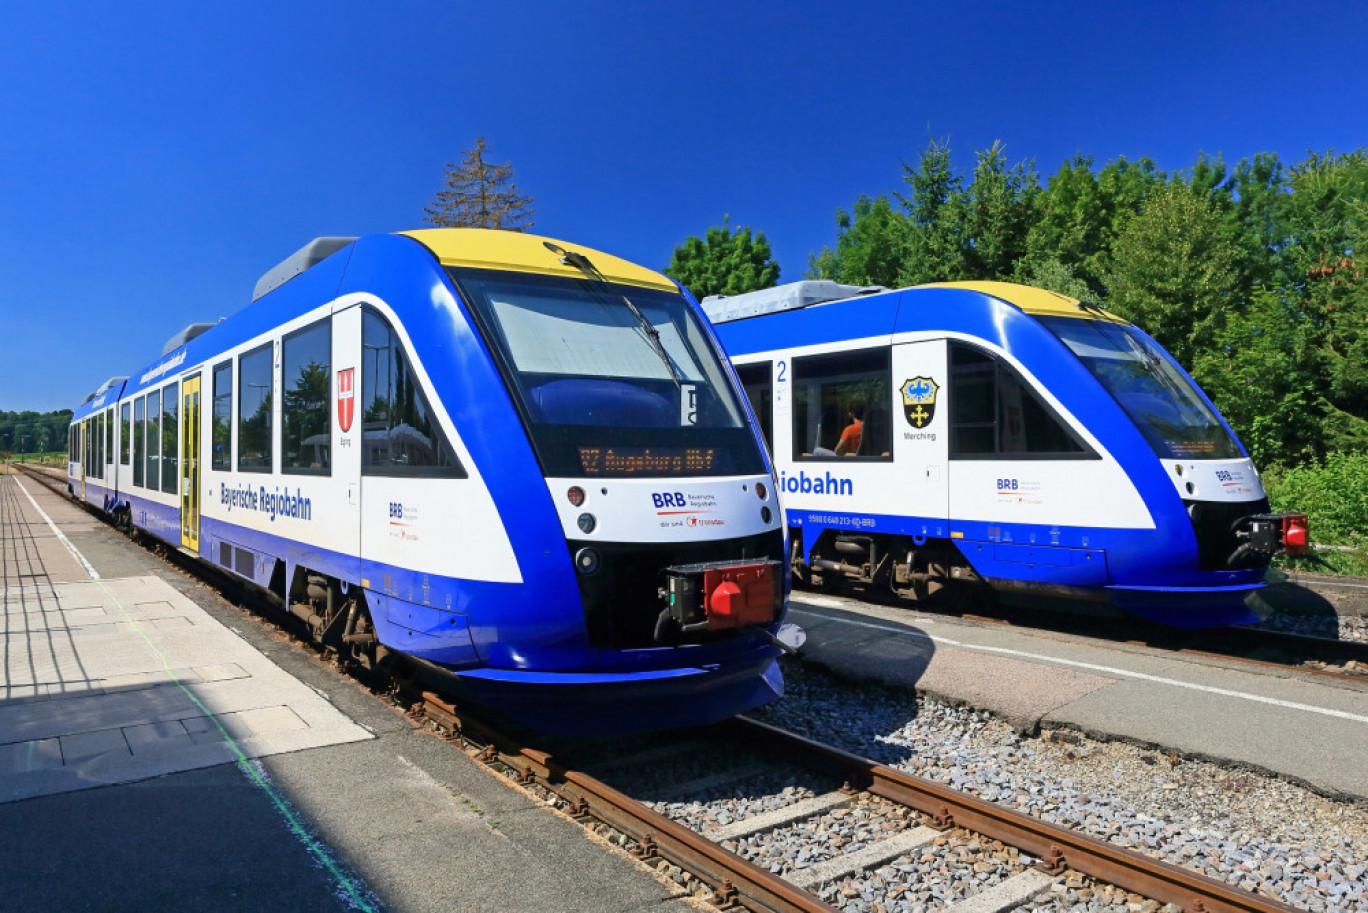 Présent dans 18 pays, Transdev est le deuxième acteur ferroviaire d'Allemagne après l'opérateur historique Deutsche Bahn.